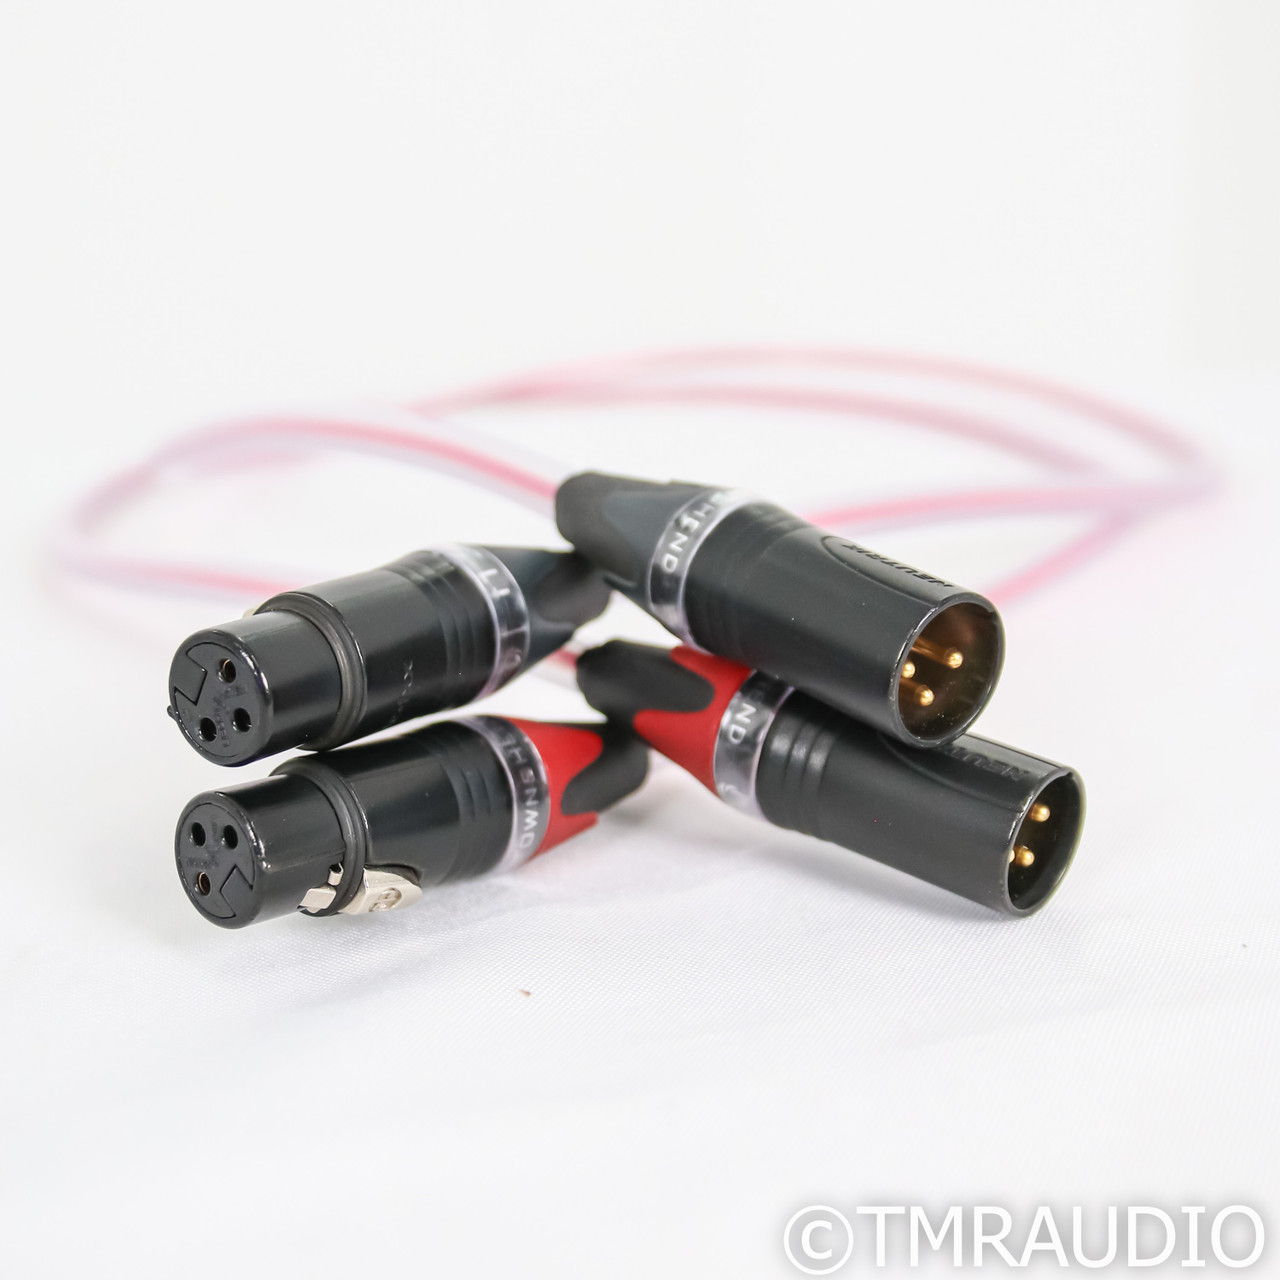 Townshend F1 Fractal XLR Cables; 1m Pair Balanced Inter...